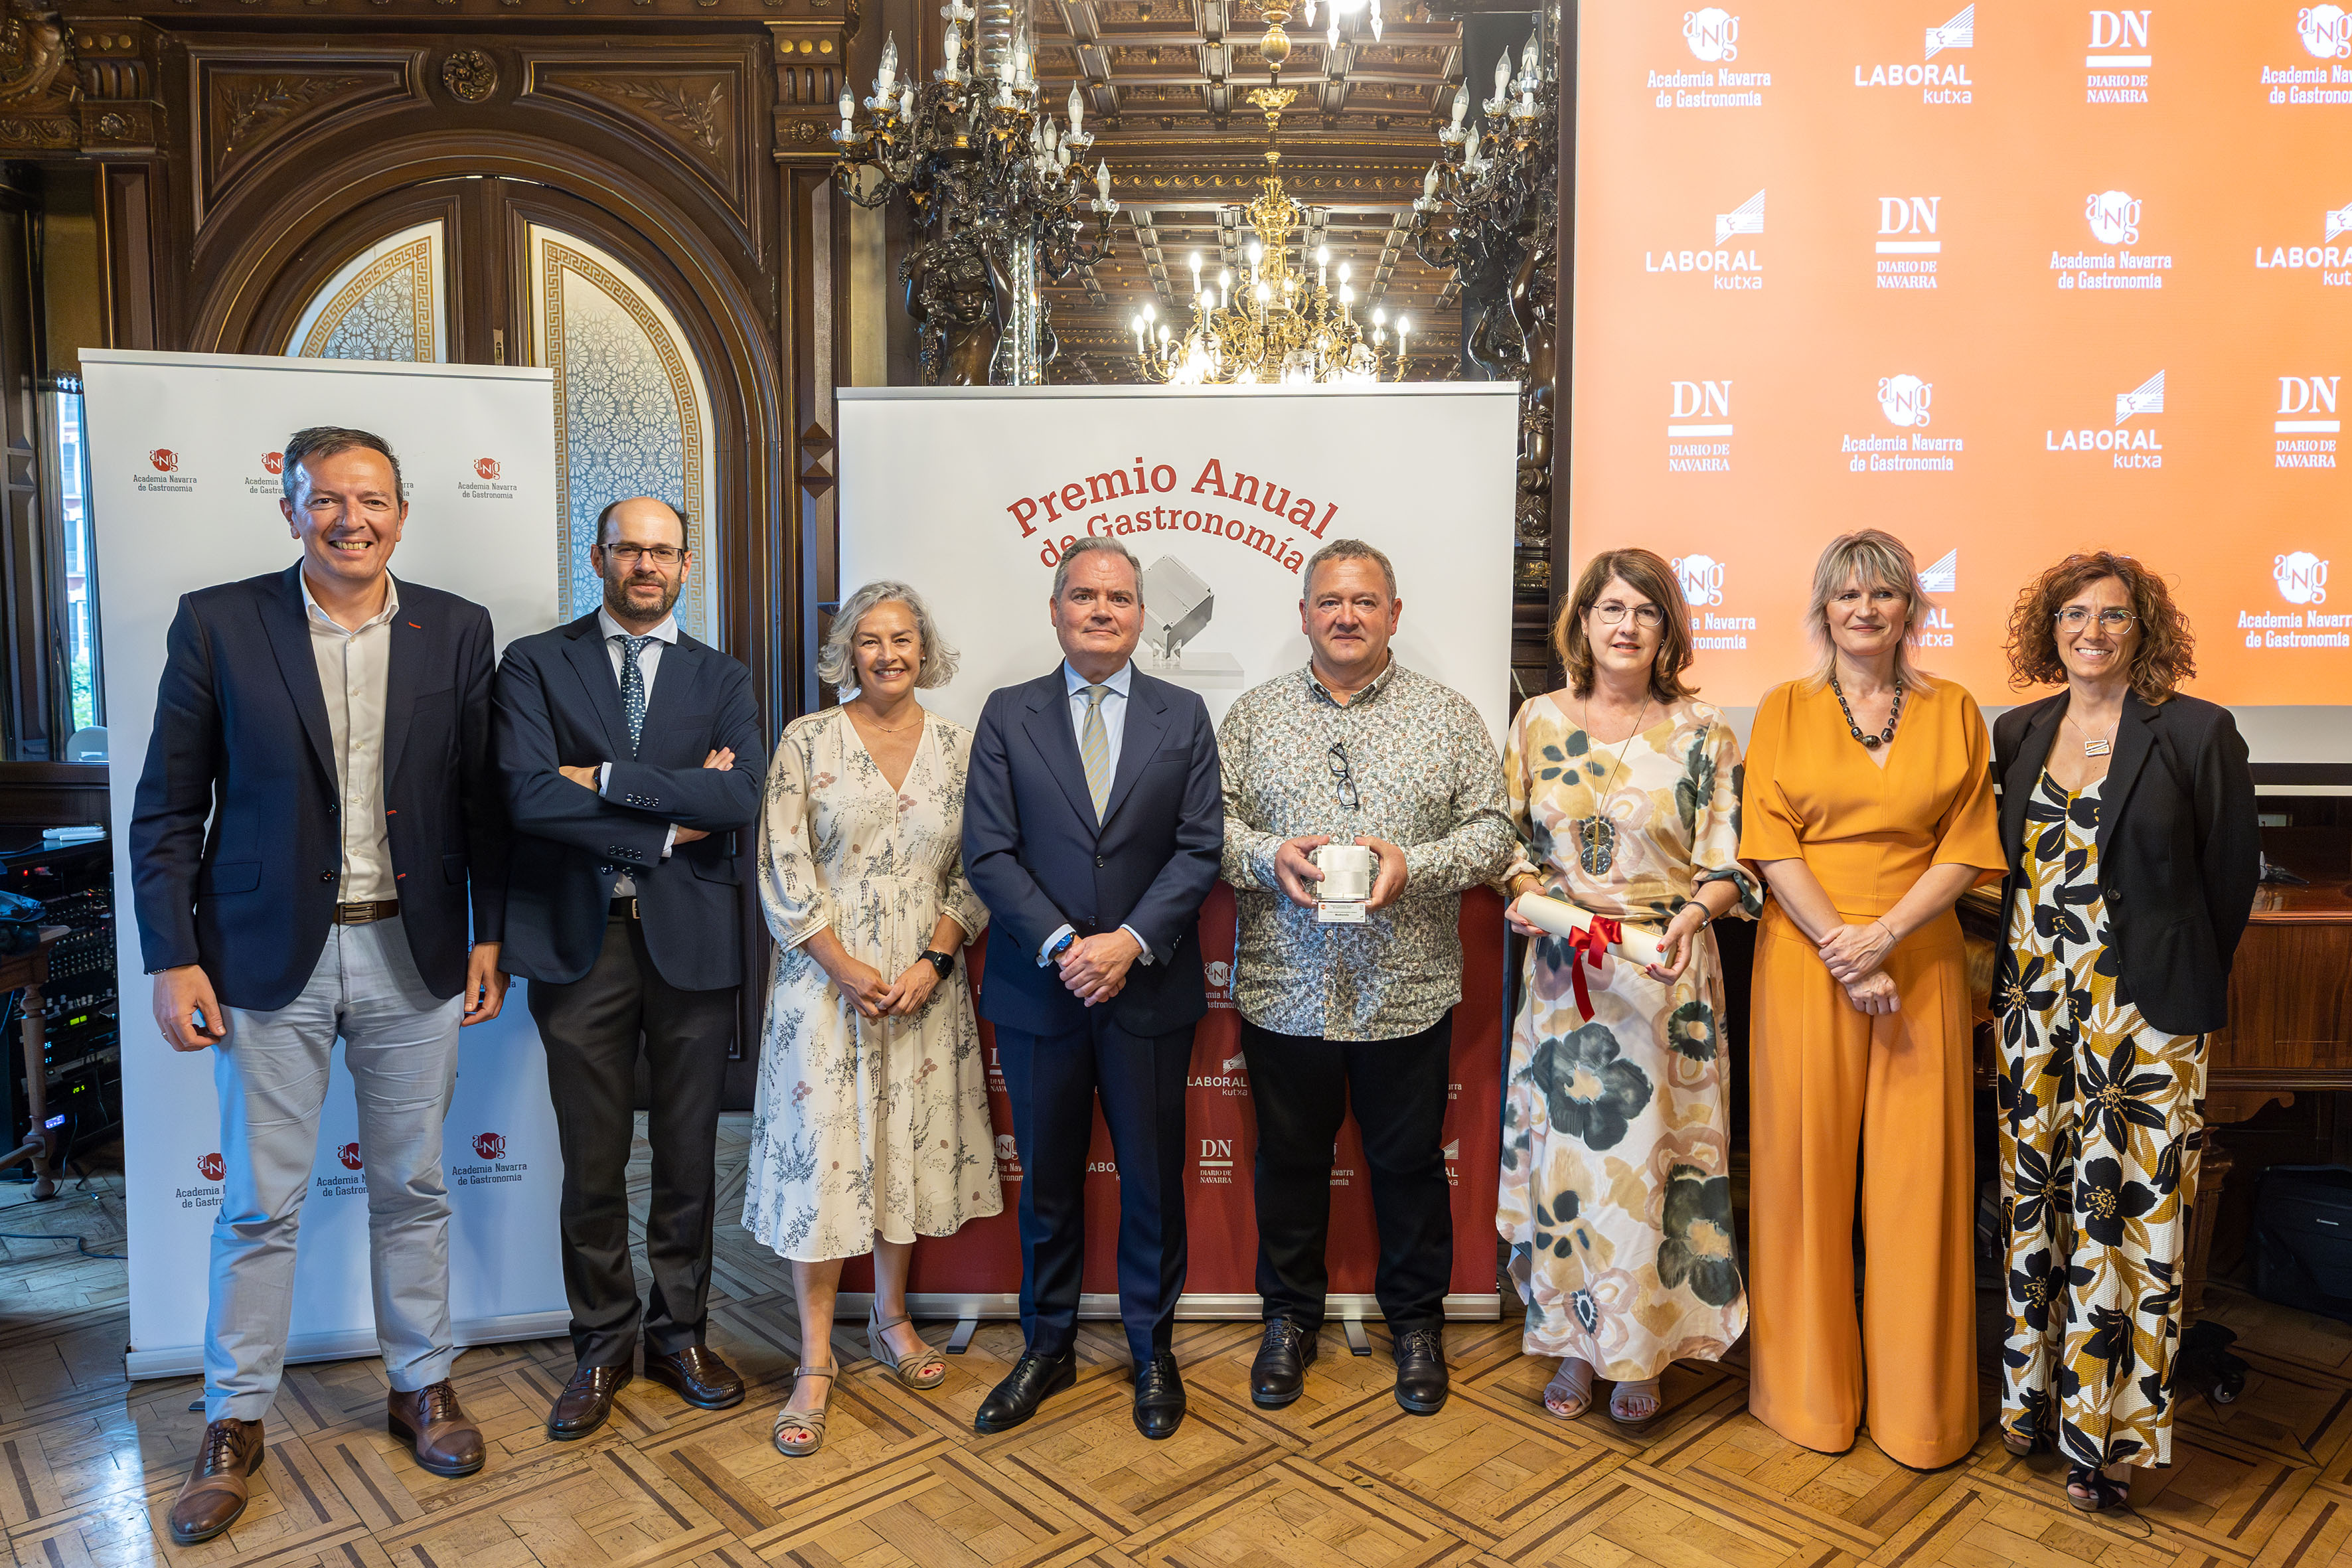 Ceremonia de Entrega del XV Premio Anual de la Academia de Gastronomía de Navarra